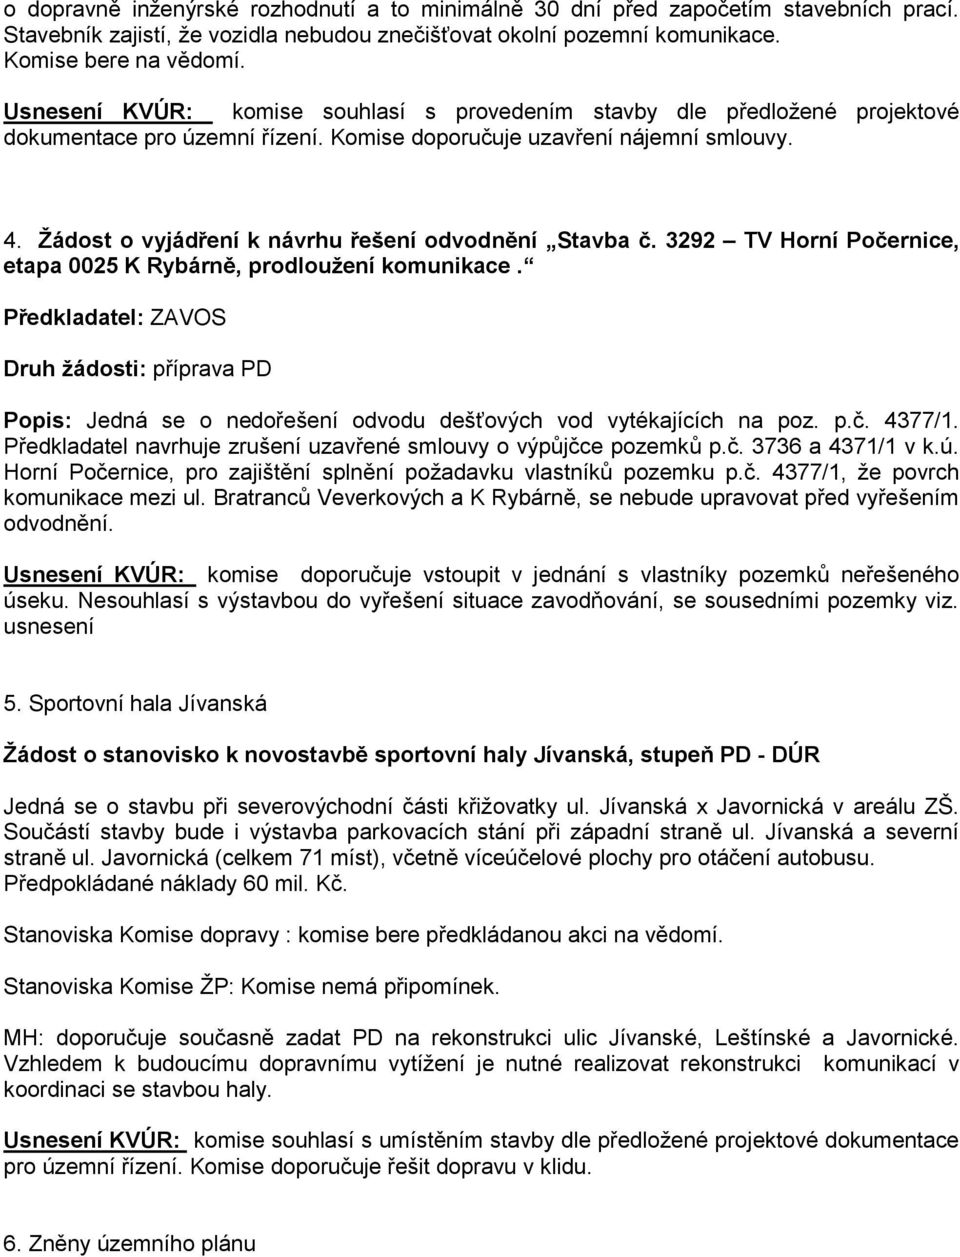 Žádost o vyjádření k návrhu řešení odvodnění Stavba č. 3292 TV Horní Počernice, etapa 0025 K Rybárně, prodloužení komunikace.